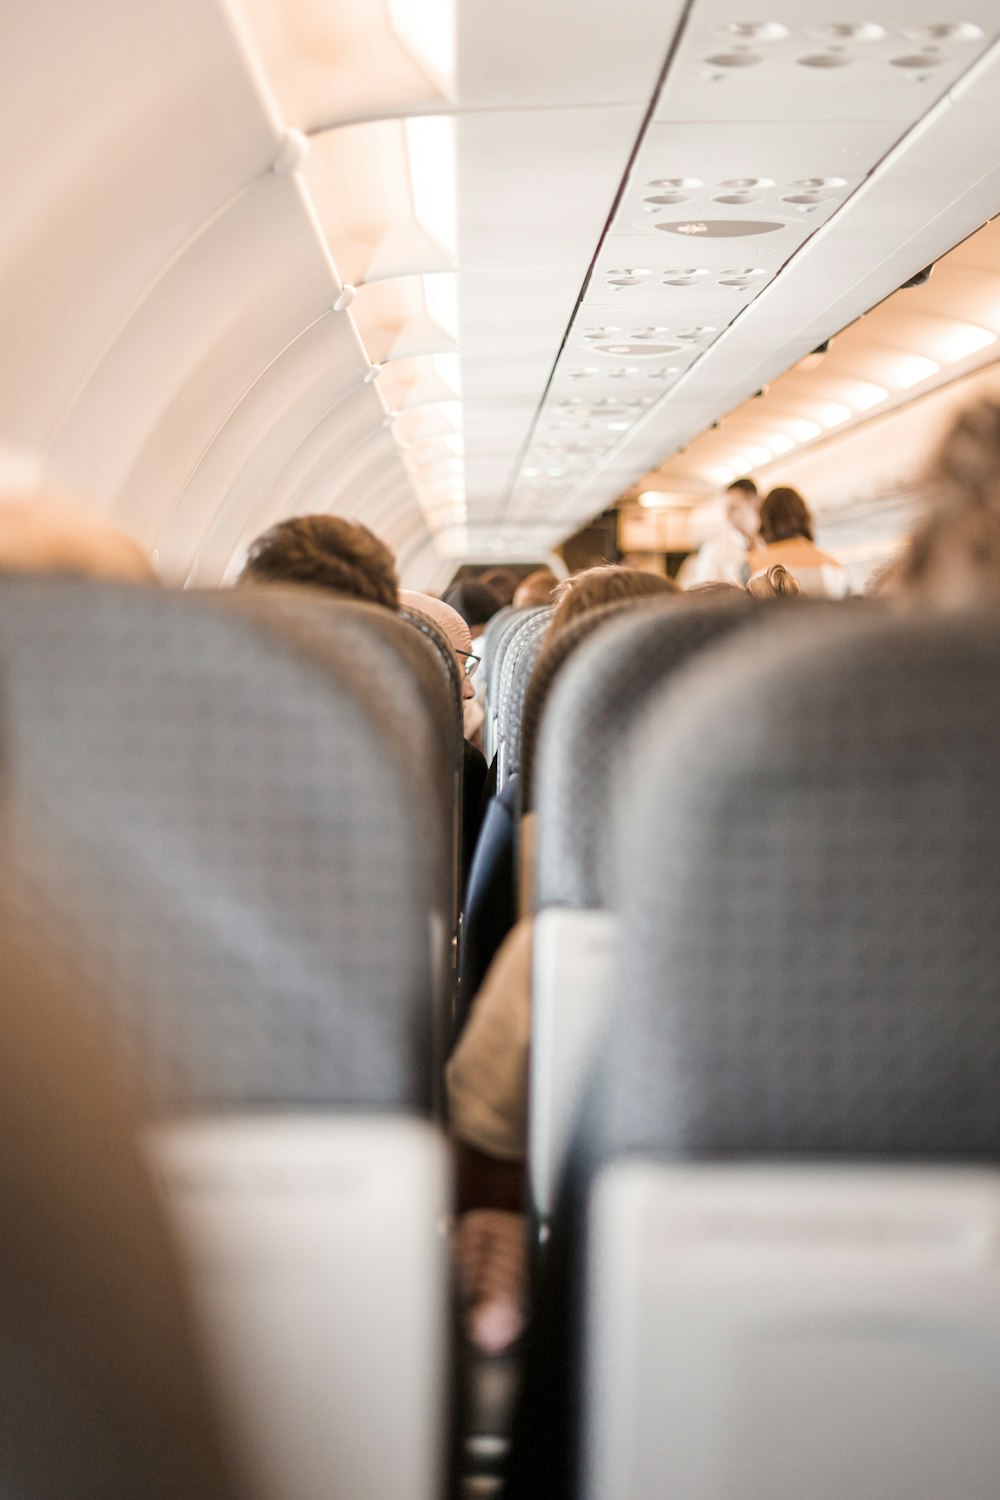 people on plane seats